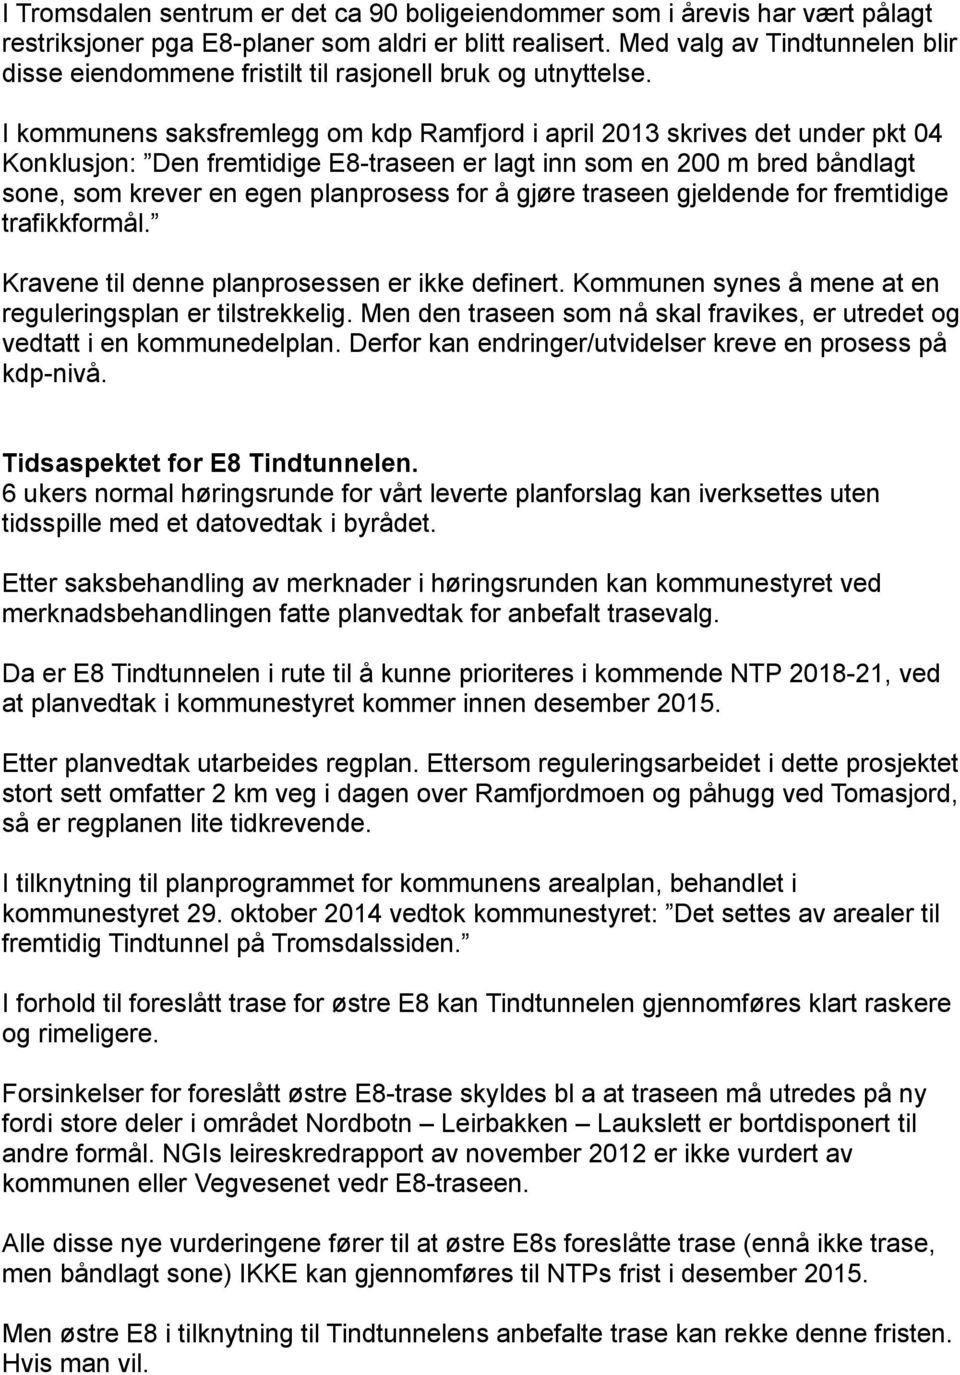 I kommunens saksfremlegg om kdp Ramfjord i april 2013 skrives det under pkt 04 Konklusjon: Den fremtidige E8-traseen er lagt inn som en 200 m bred båndlagt sone, som krever en egen planprosess for å